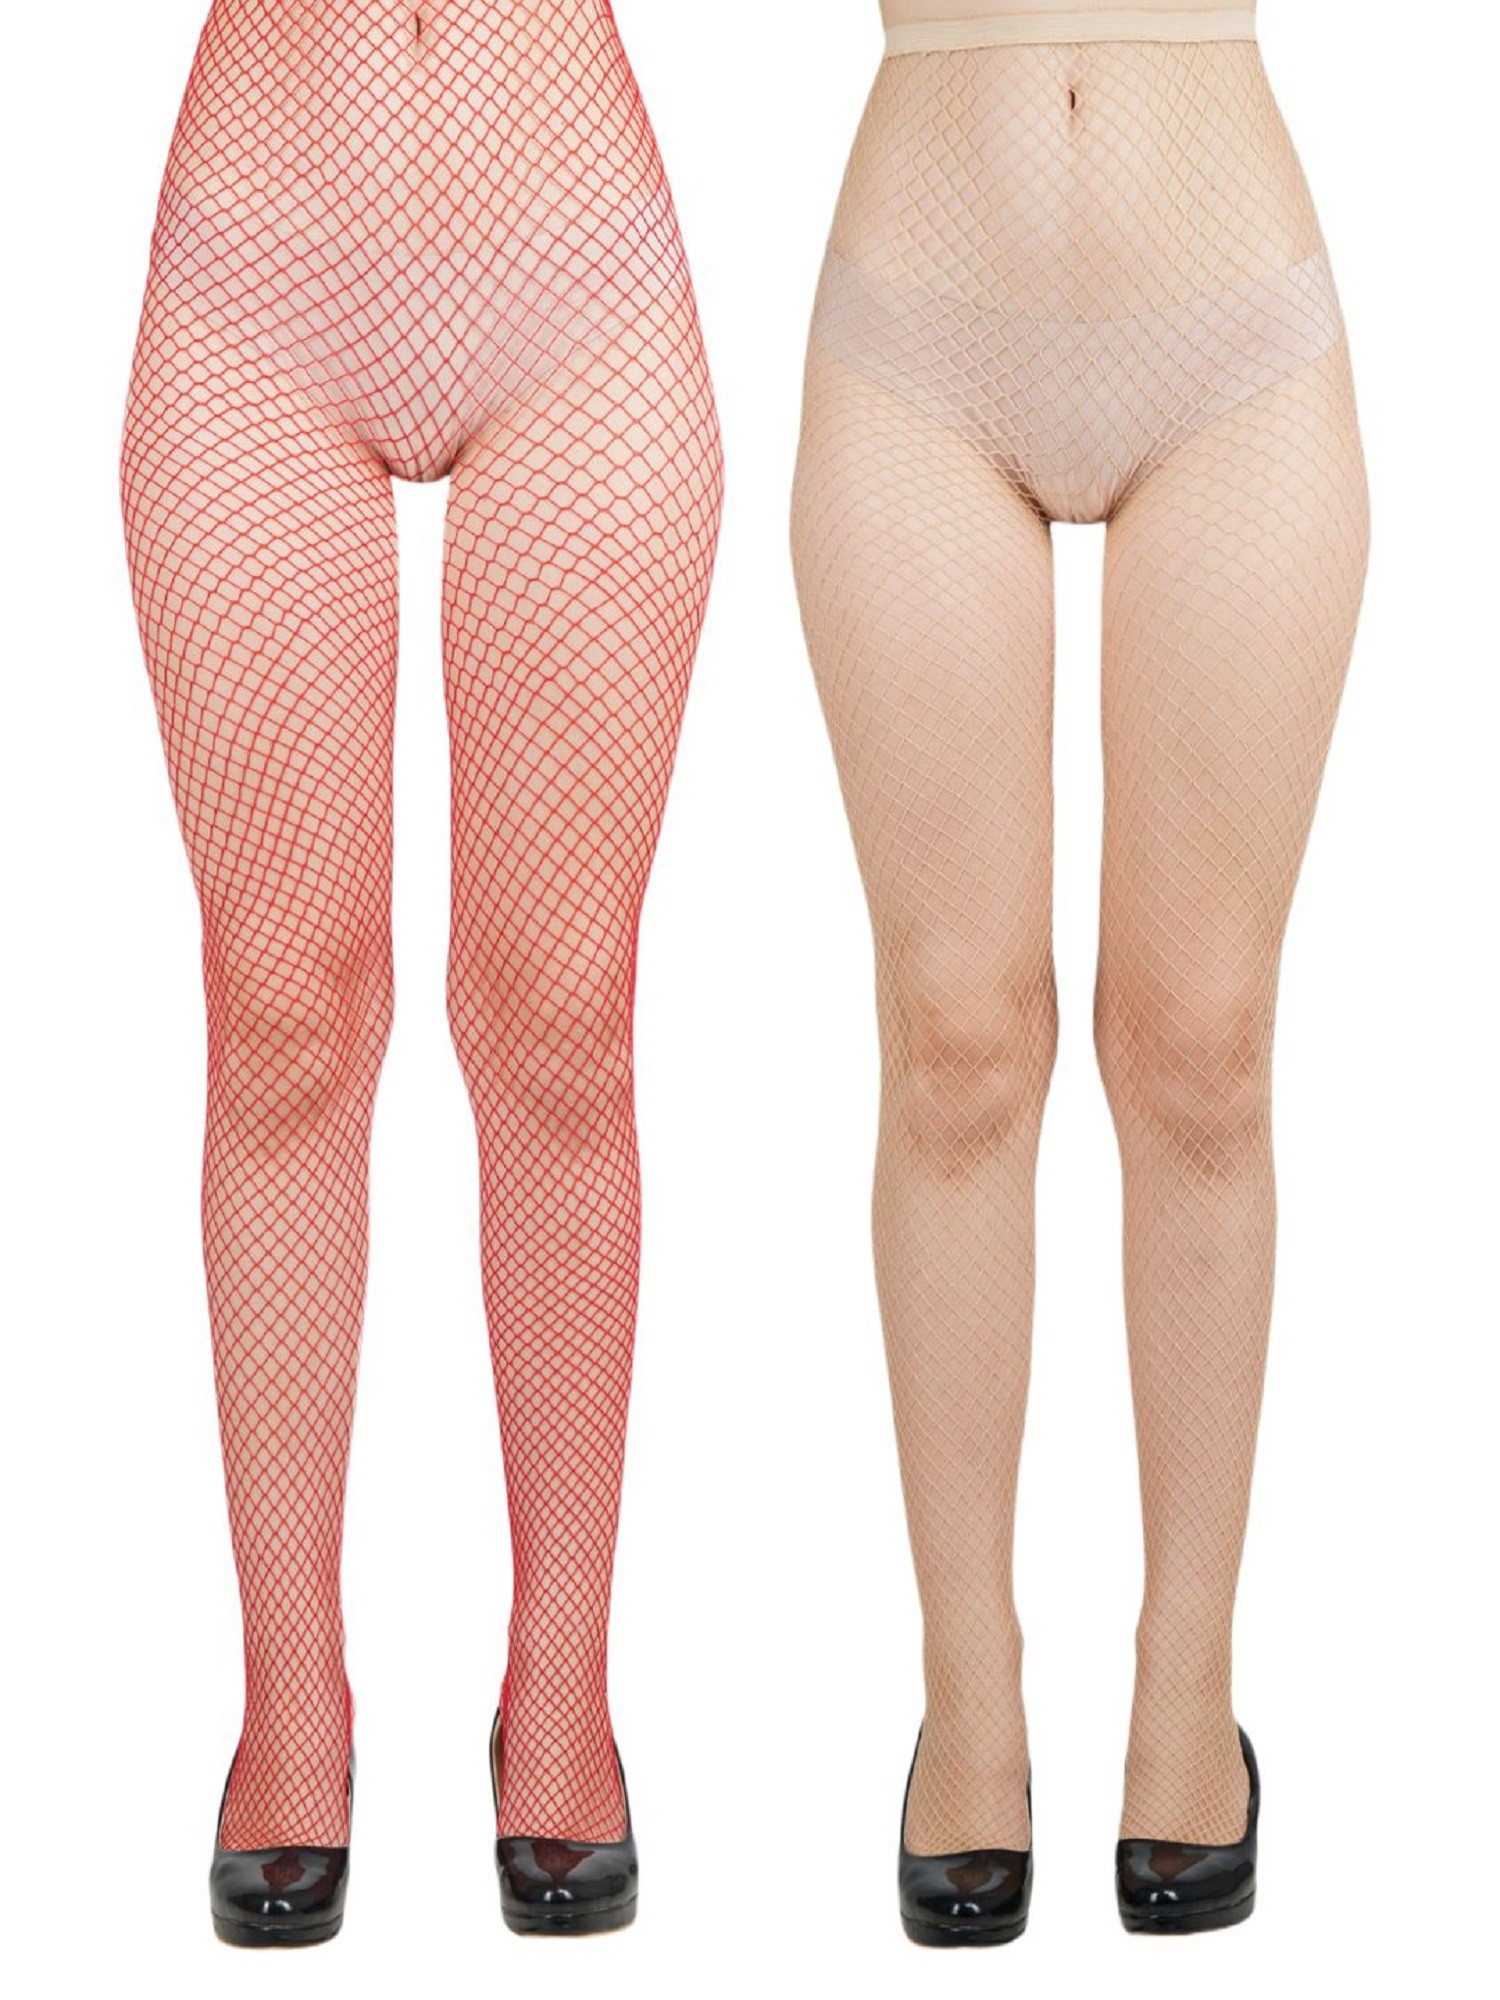 NEXT2SKIN Women's Fishnet Pattern Mesh Pantyhose Stockings Pack of 2 (Red&Skin, MediumNet)